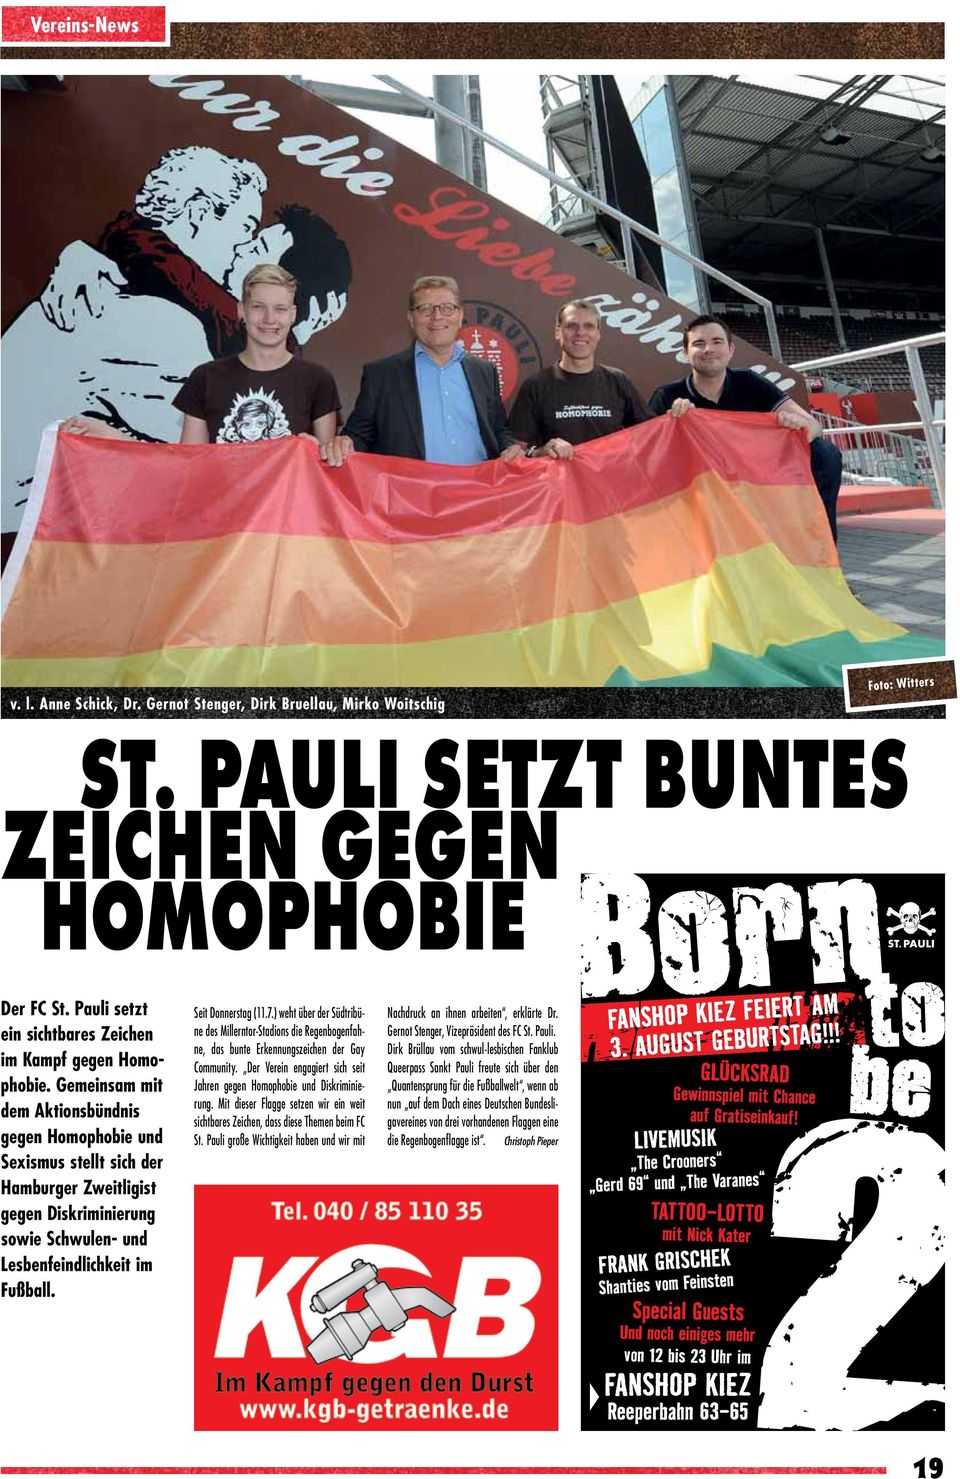 Gemeinsam mit dem Aktionsbündnis gegen Homophobie und Sexismus stellt sich der Hamburger Zweitligist gegen Diskriminierung sowie Schwulen- und Lesbenfeindlichkeit im Fußball. Seit Donnerstag (11.7.